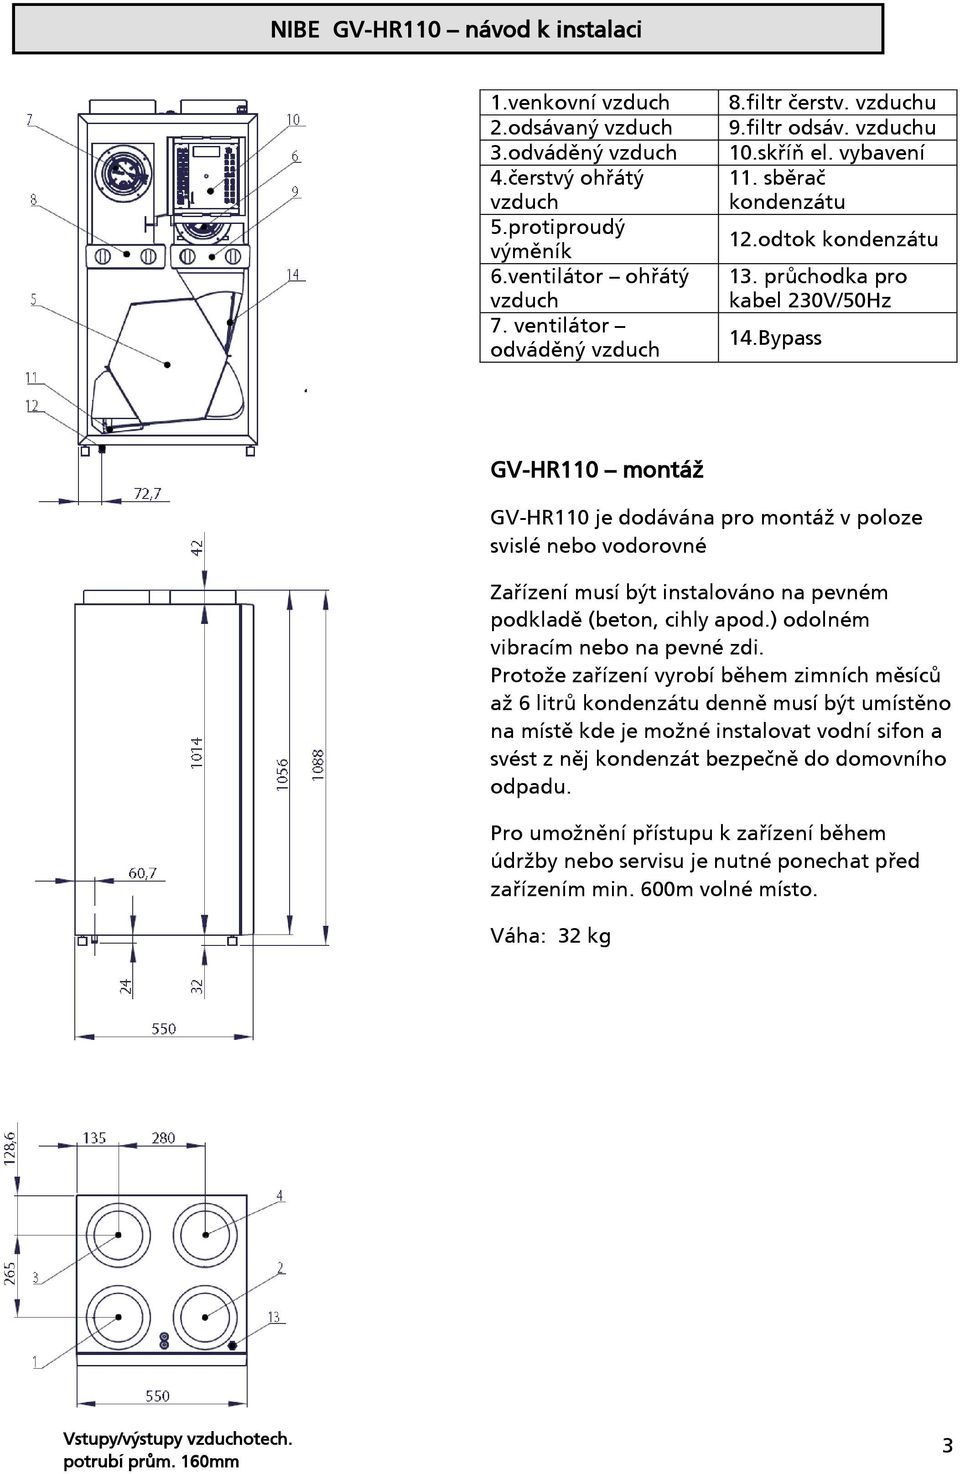 Bypass GV-HR110 montáž GV-HR110 je dodávána pro montáž v poloze svislé nebo vodorovné Zařízení musí být instalováno na pevném podkladě (beton, cihly apod.) odolném vibracím nebo na pevné zdi.